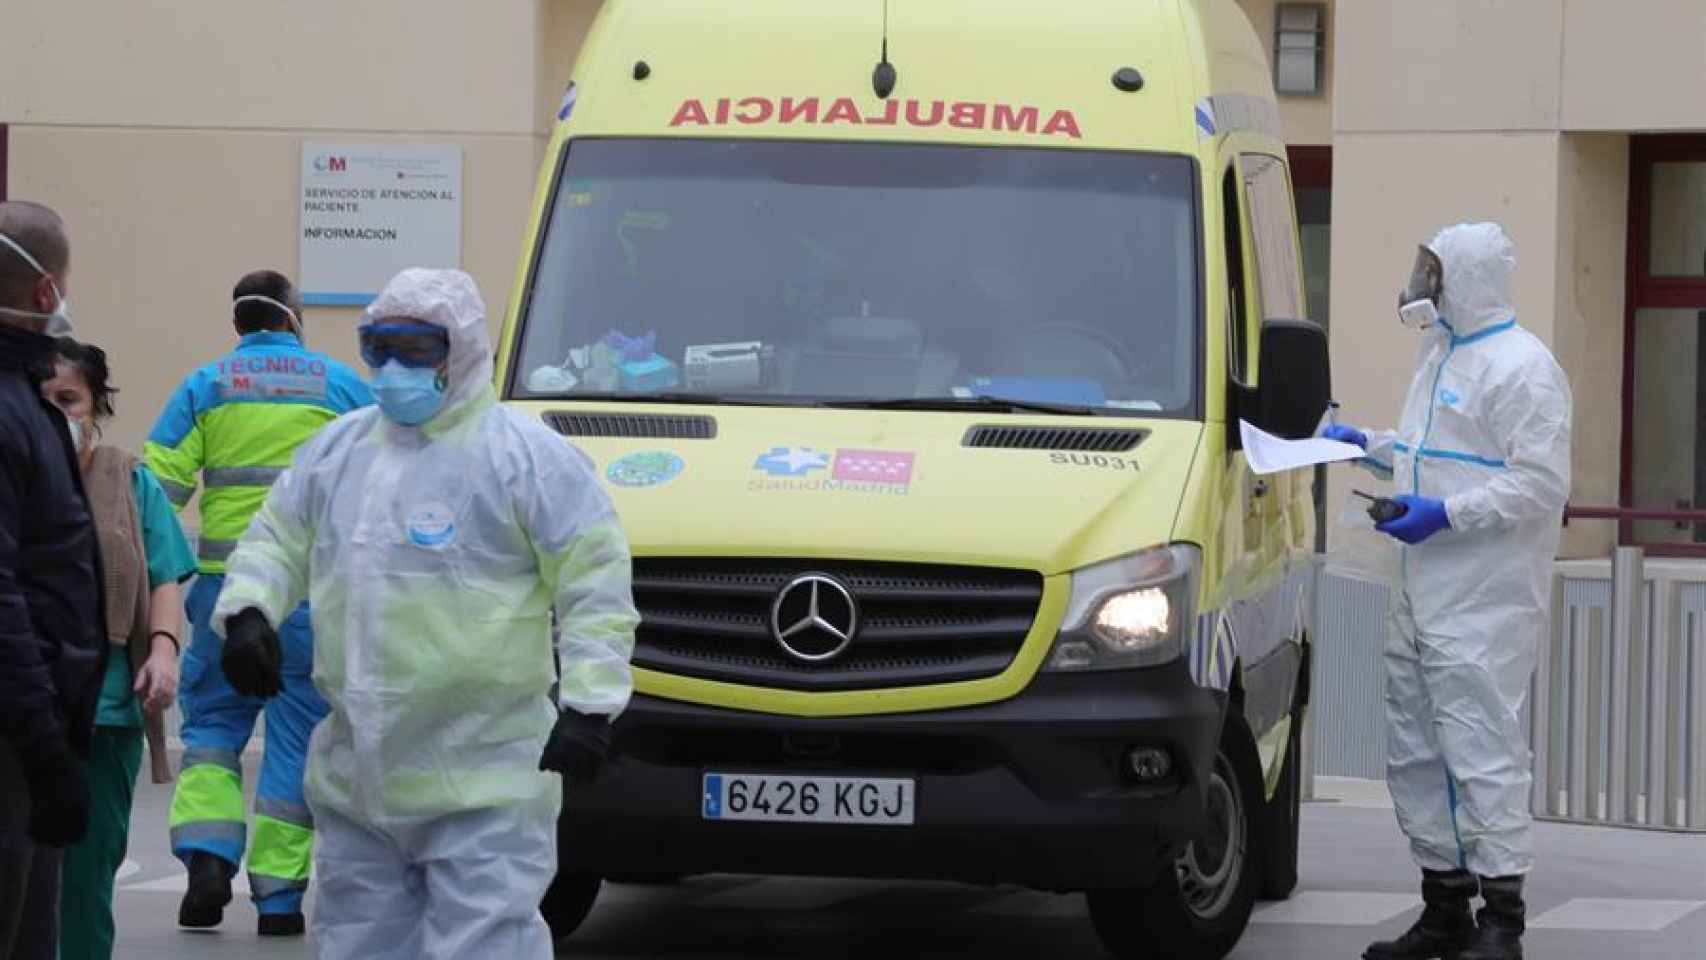 Cuatro sanitarios han muerto en Cataluña desde que empezó la pandemia del coronavirus